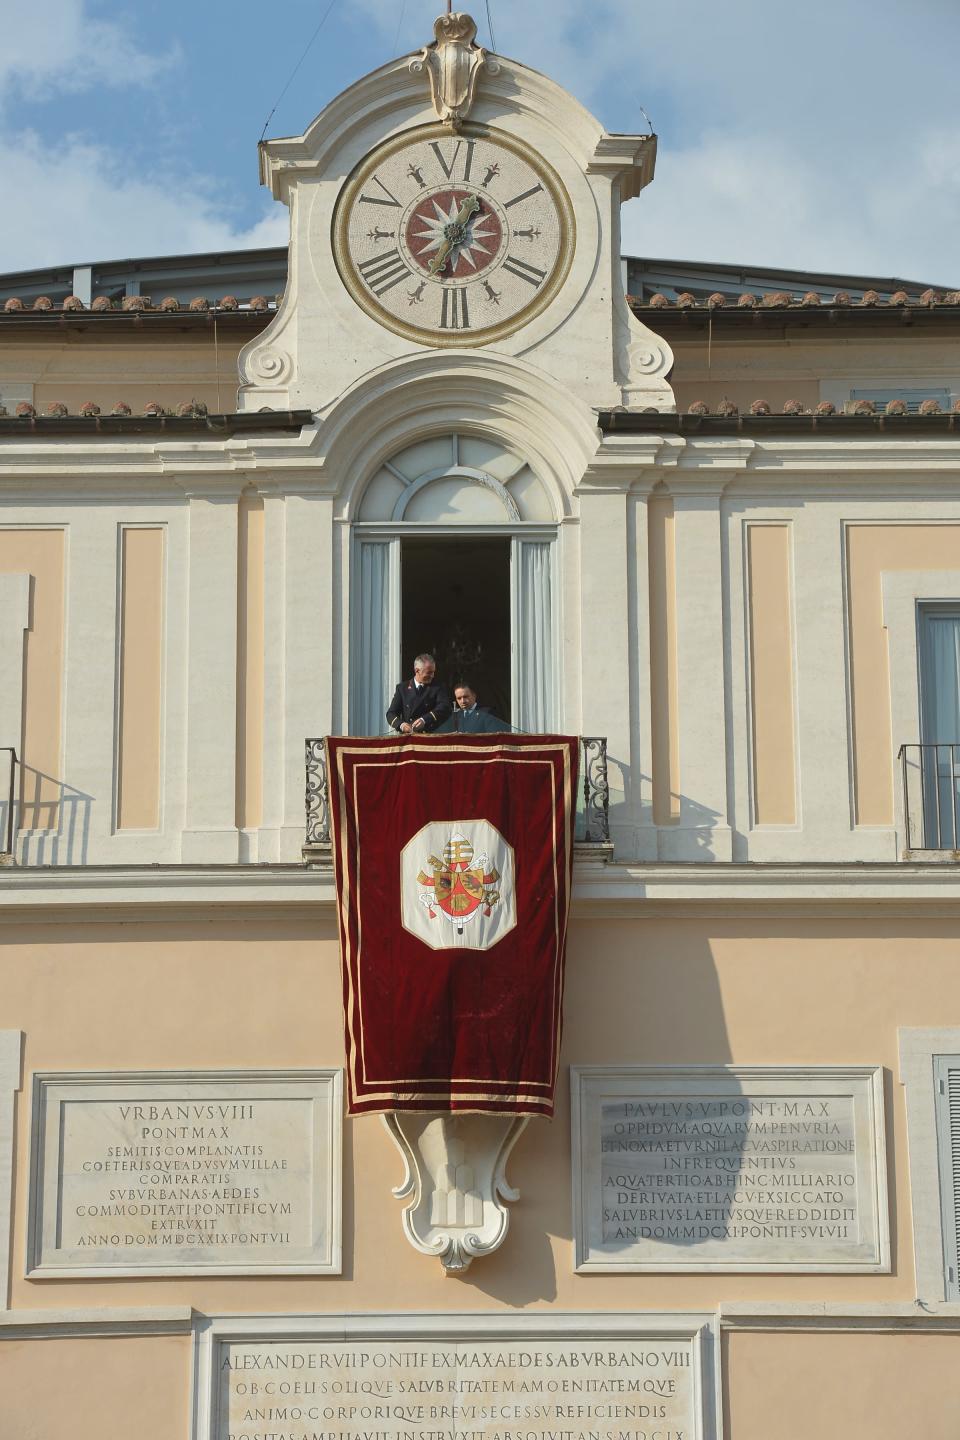 Tout est prêt à Castel Gandolfo - Un drap de velours rouge et or pendait à la fenêtre depuis laquelle Benoît XVI devait faire sa dernière apparition publique en tant que pape. Sur les balcons, terrasses et fenêtres alentours, la foule a brandi le drapeau jaune et blanc du Vatican. VINCENZO PINTO/AFP